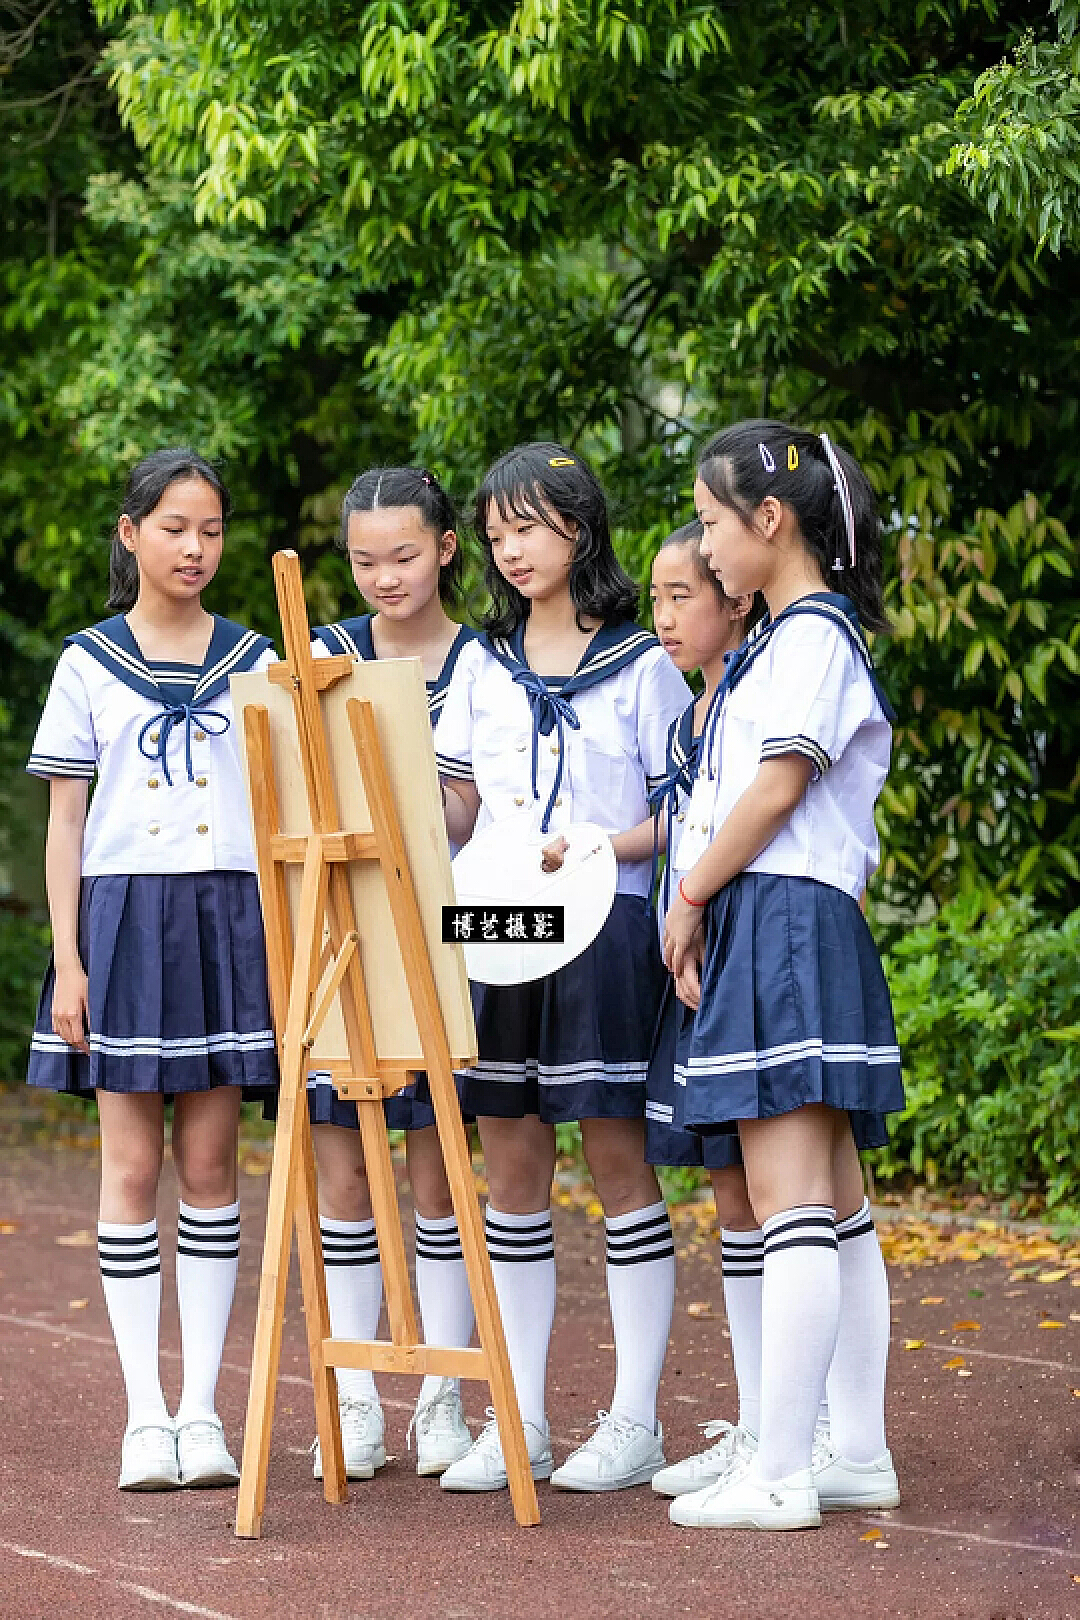 小学女生玩耍-蓝牛仔影像-中国原创广告影像素材